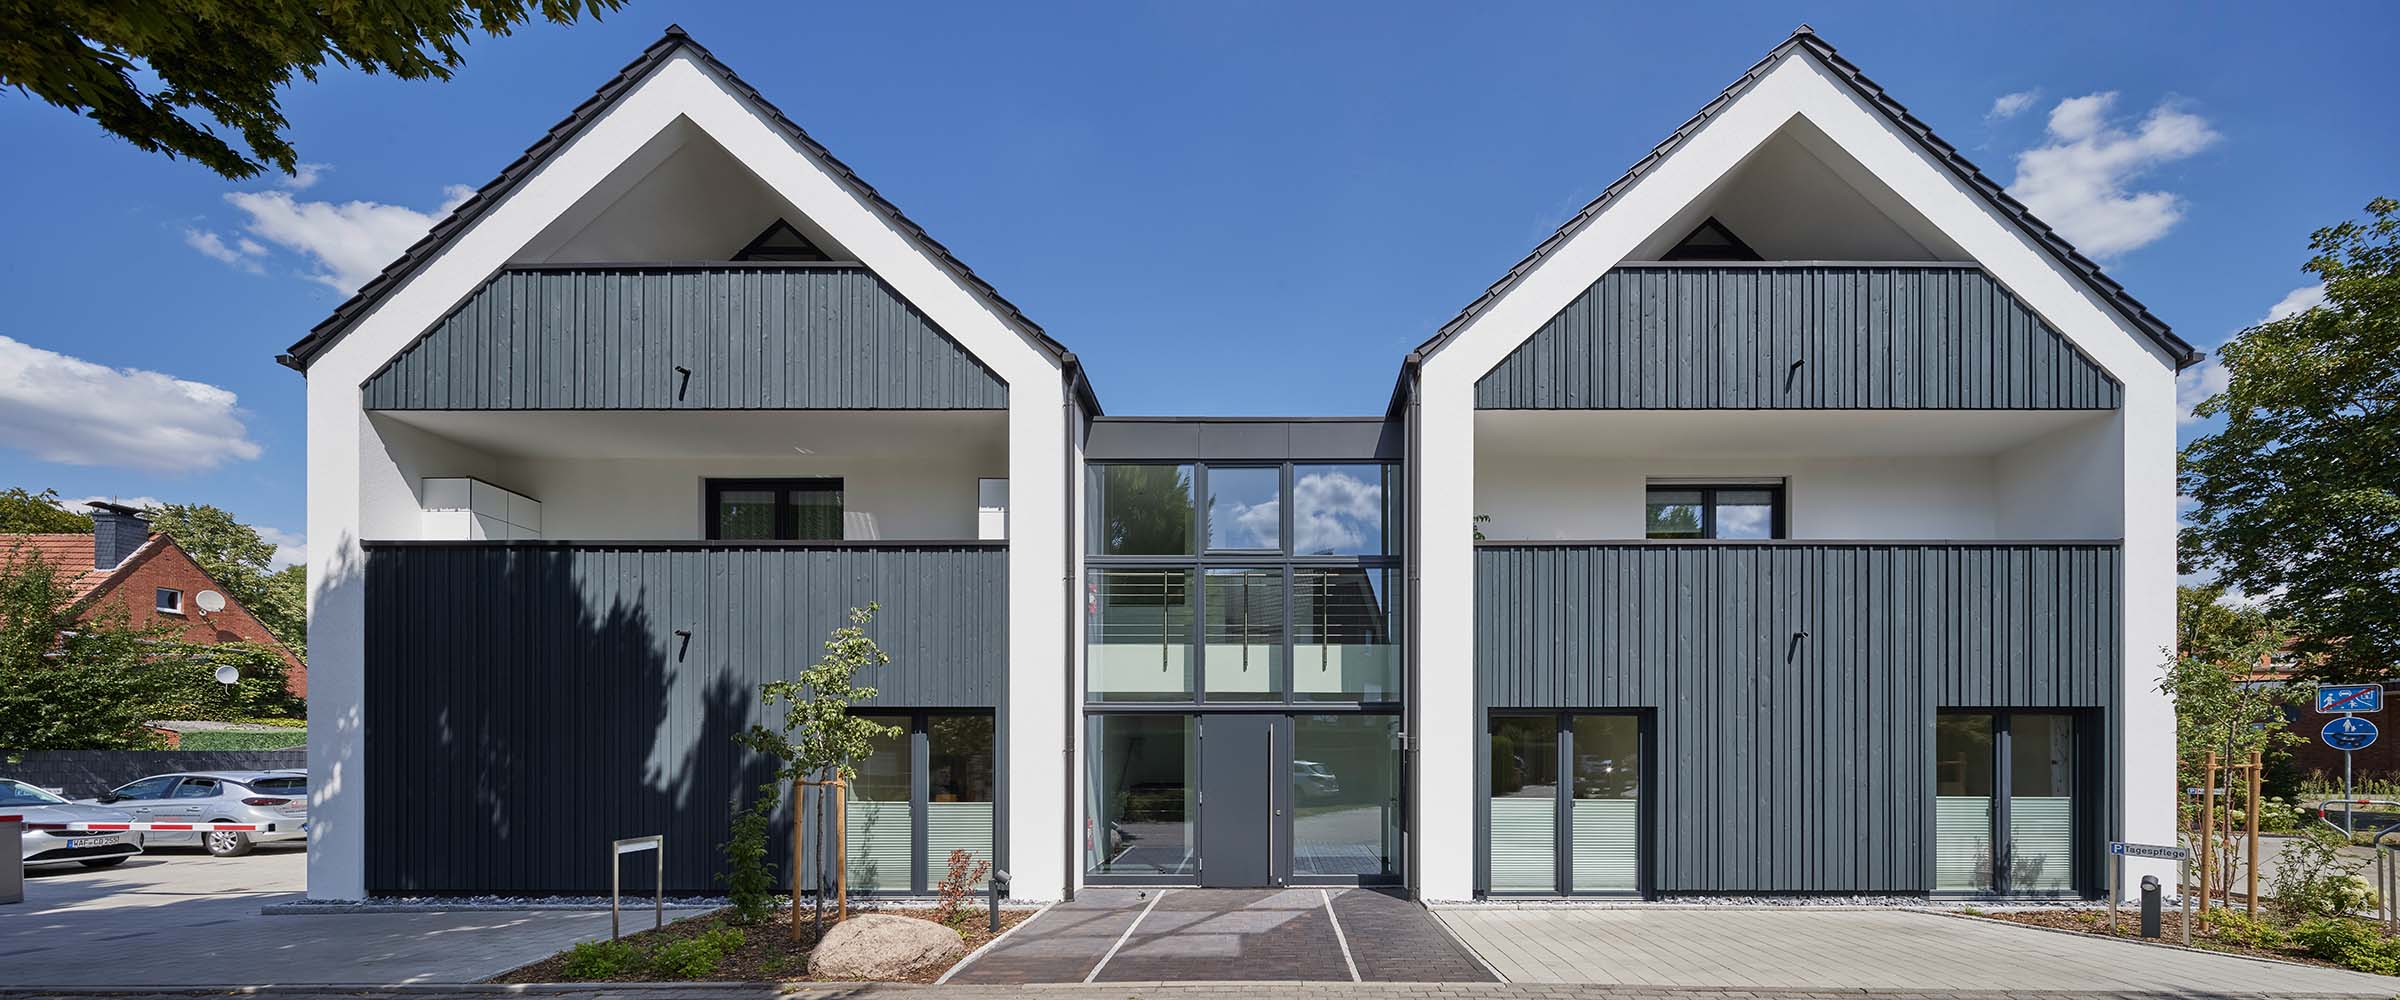 Tagespflege mit moderner Holzfassade | Architektur Sassenberg